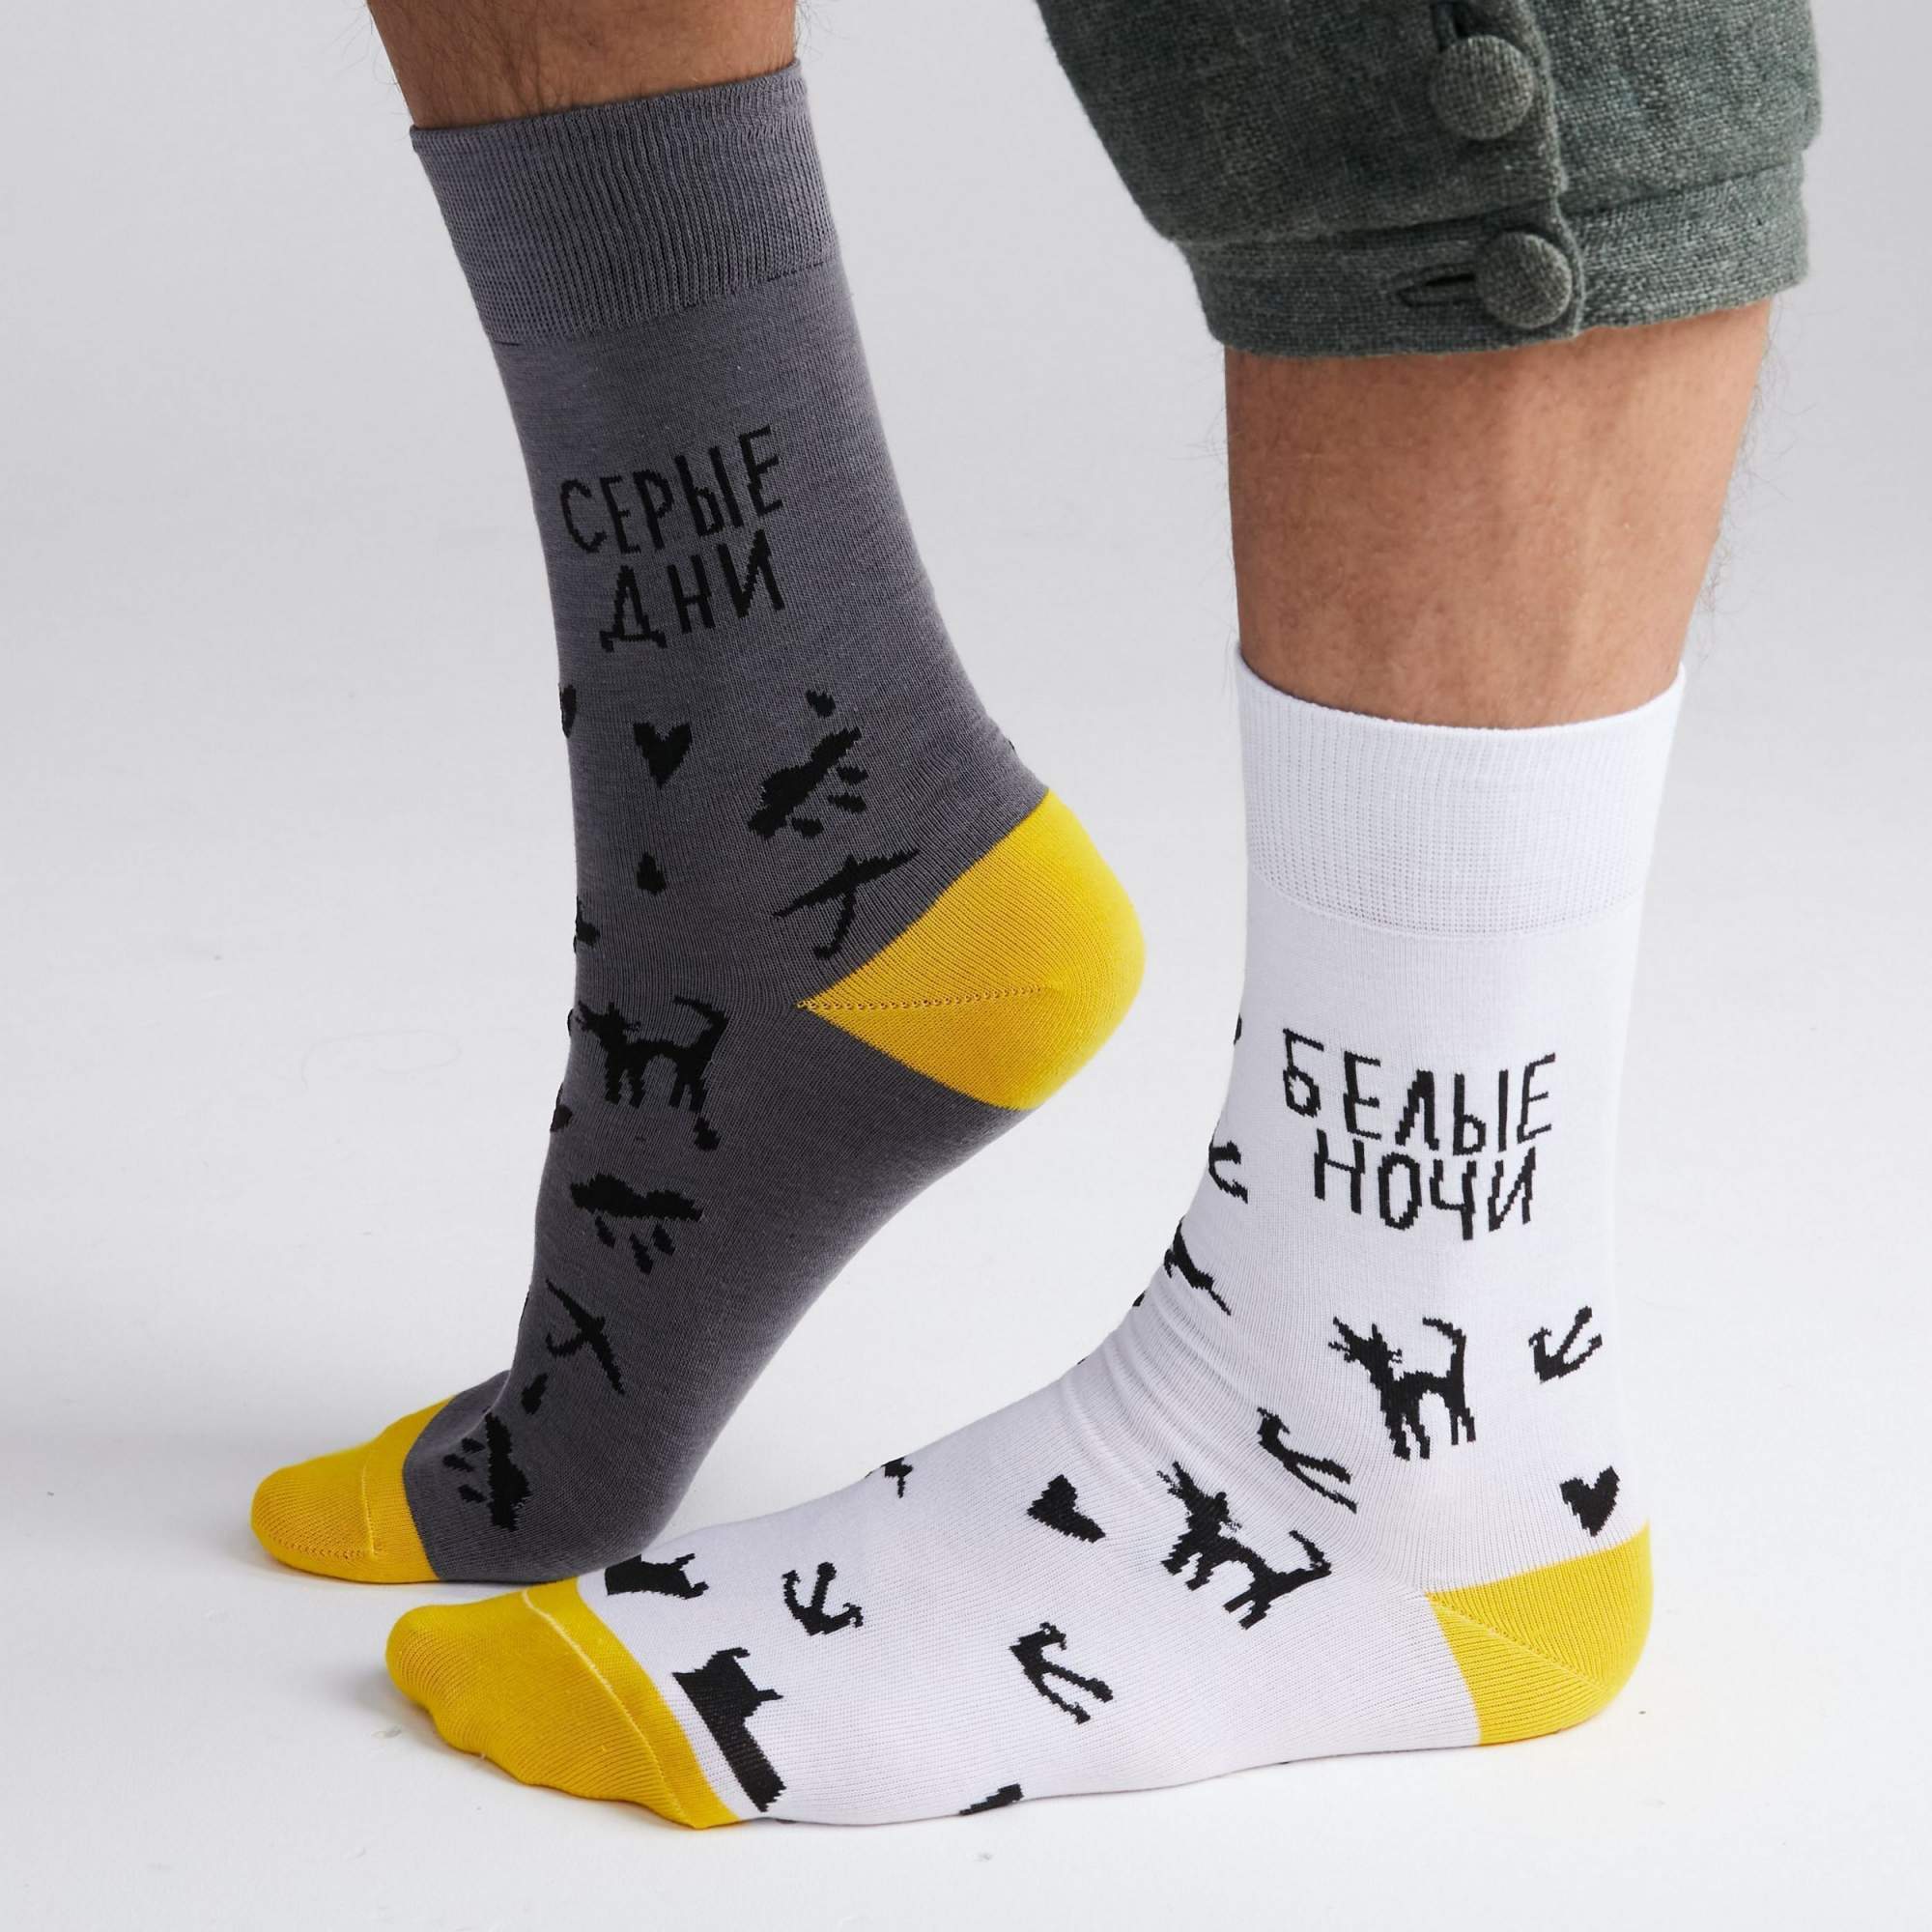 Носки St. Friday Socks SPB-1004-02 разноцветные 42-46